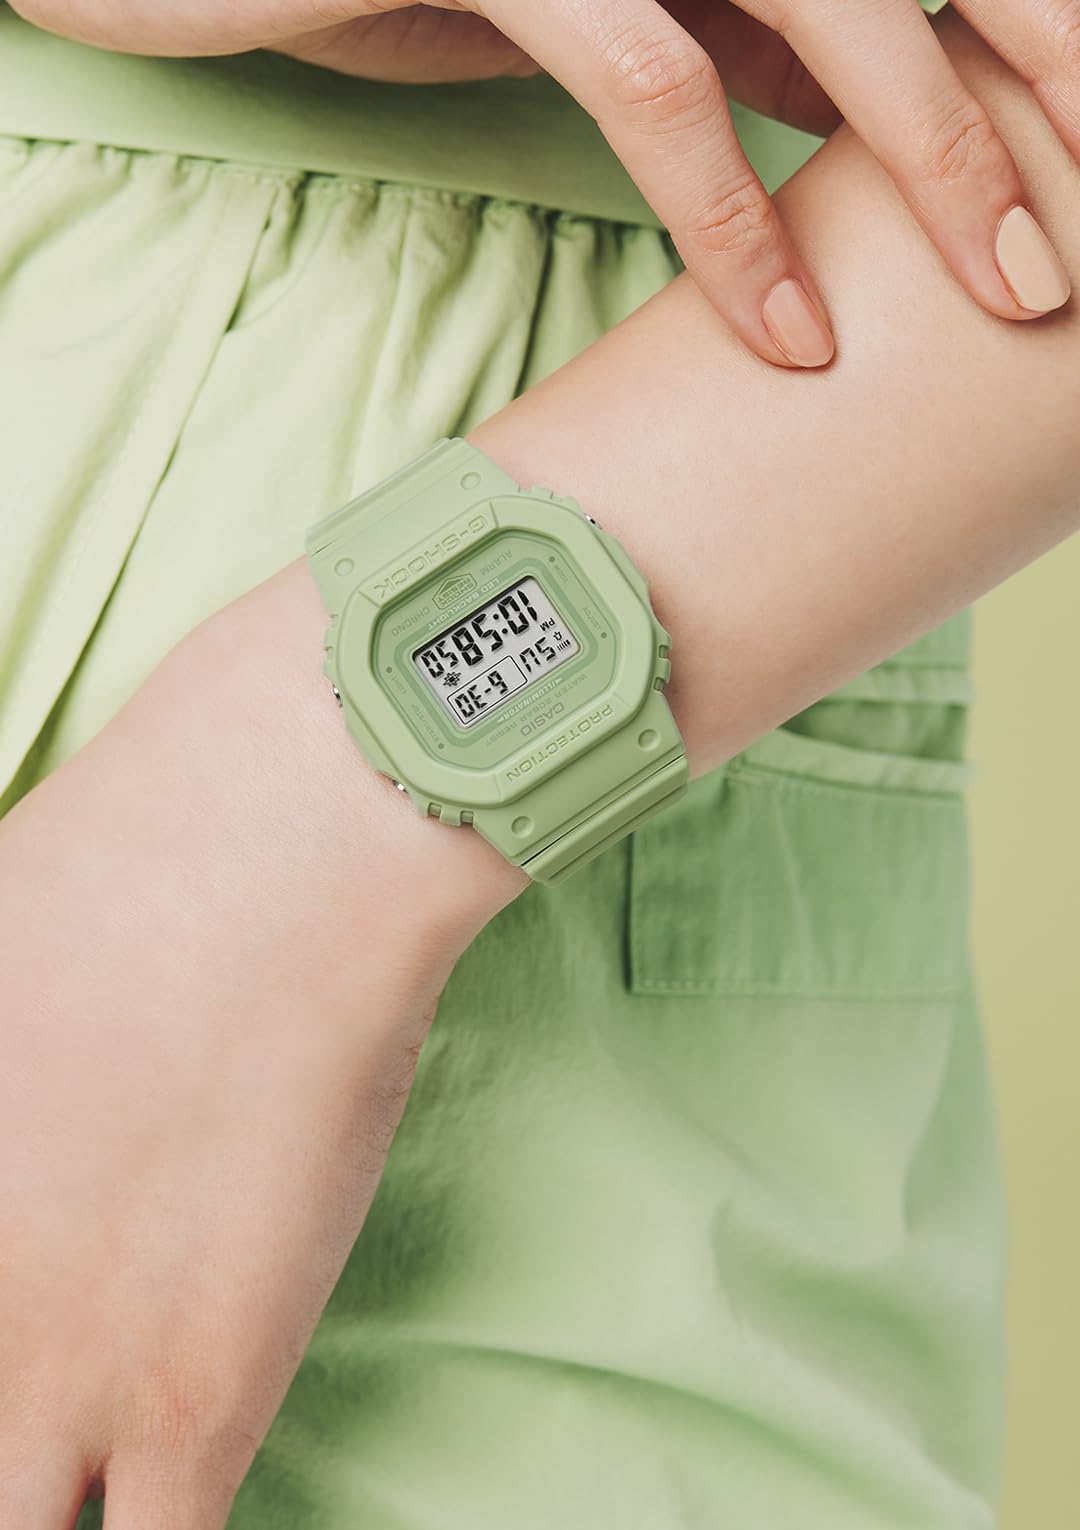 [カシオ] 腕時計 ジーショック 【国内正規品】 ミッドサイズモデル GMD-S5600BA-3JF レディース グリーン - BanzaiHobby